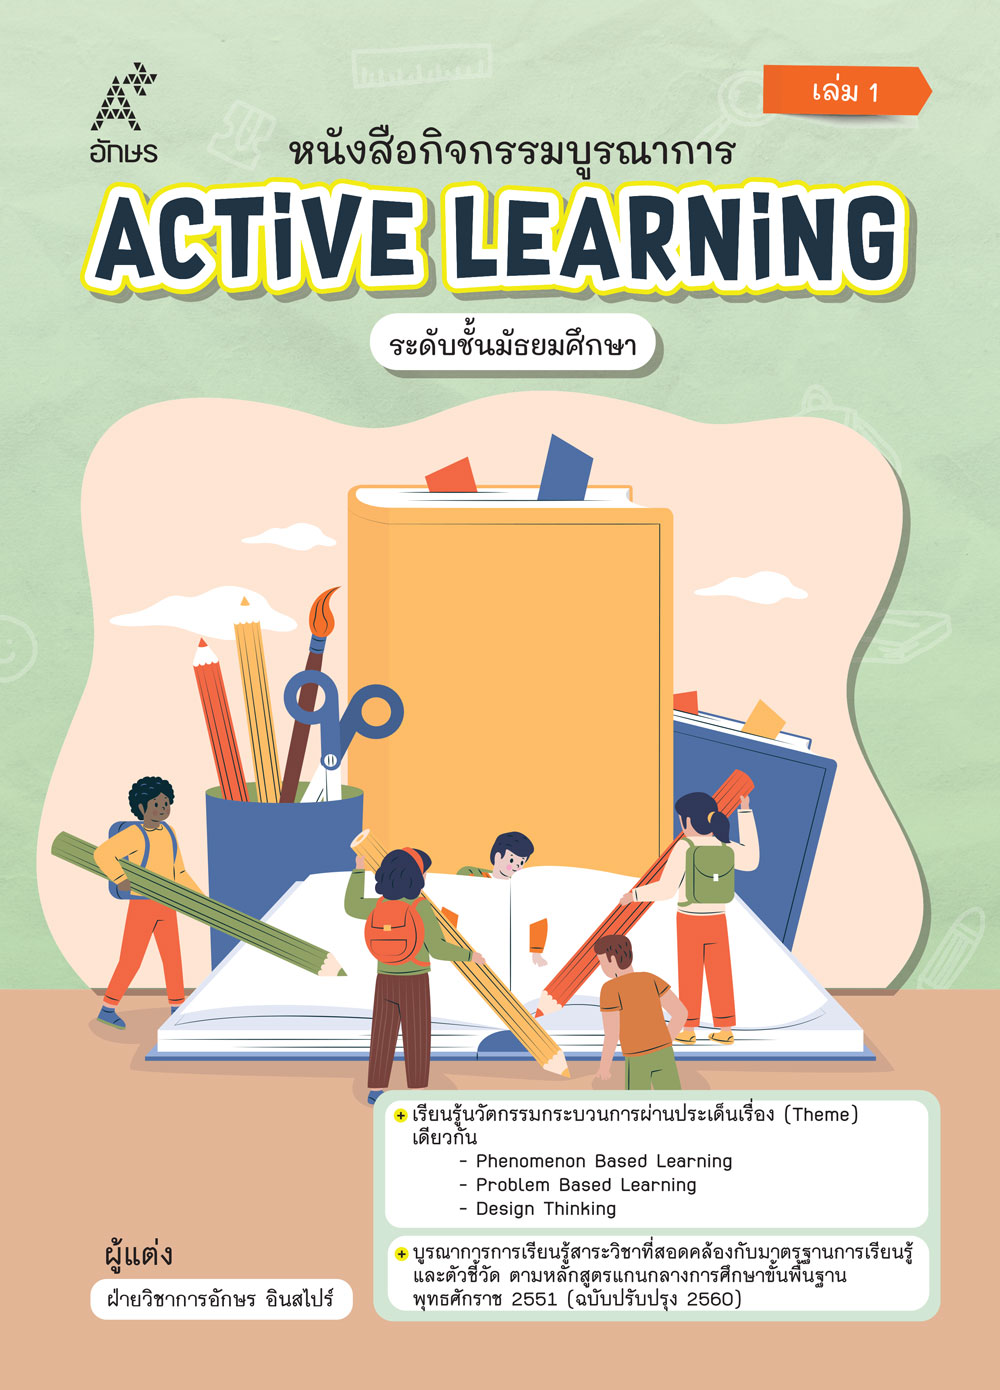 หนังสือกิจกรรมบูรณาการ Active Learning ระดับชั้นมัธยมศึกษา เล่ม 1 (Coming soon)